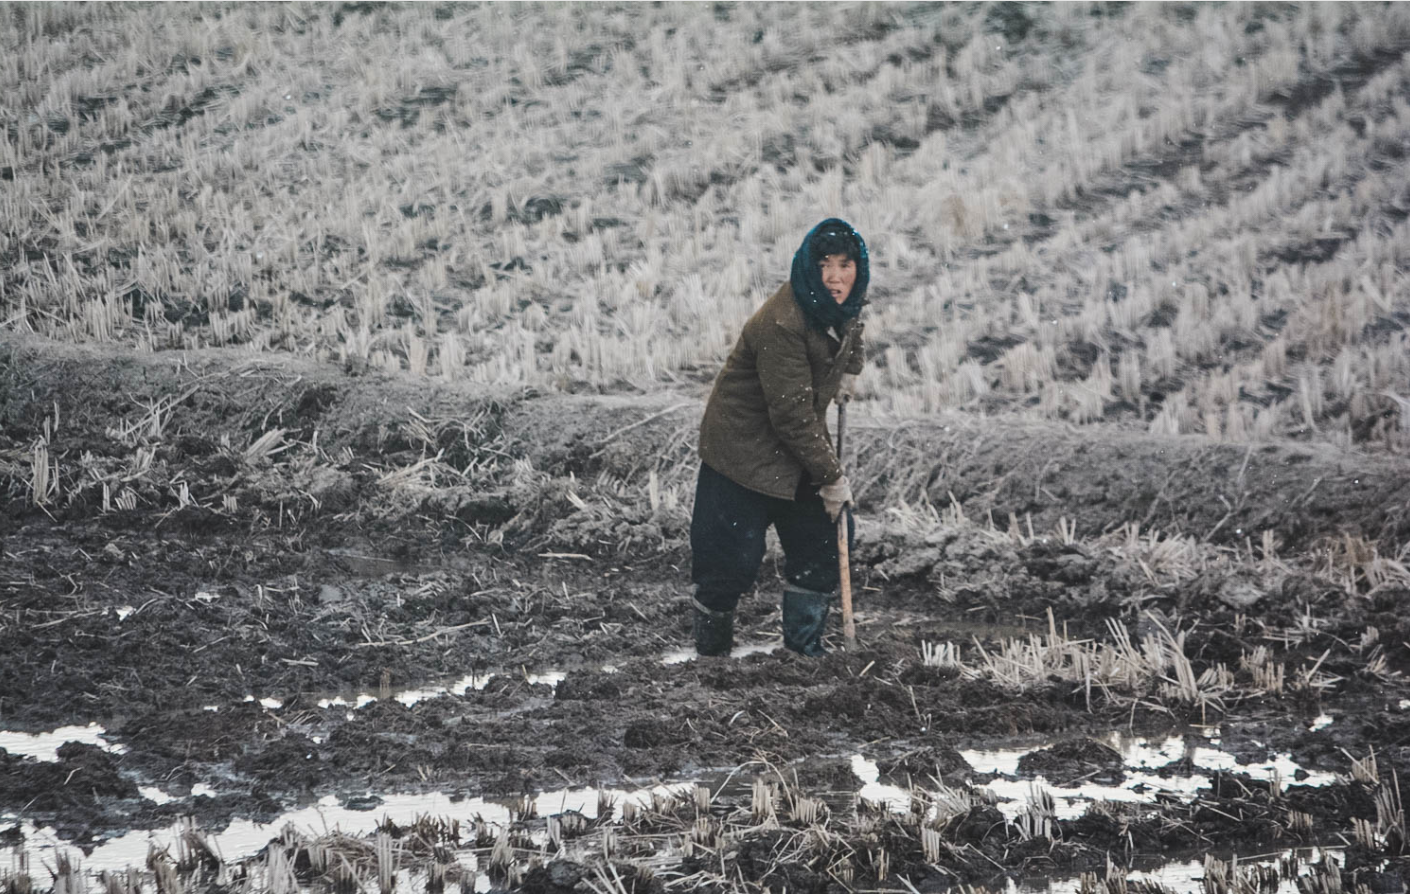 朝鲜冬日掠影:看看朝鲜百姓是如何过冬的?